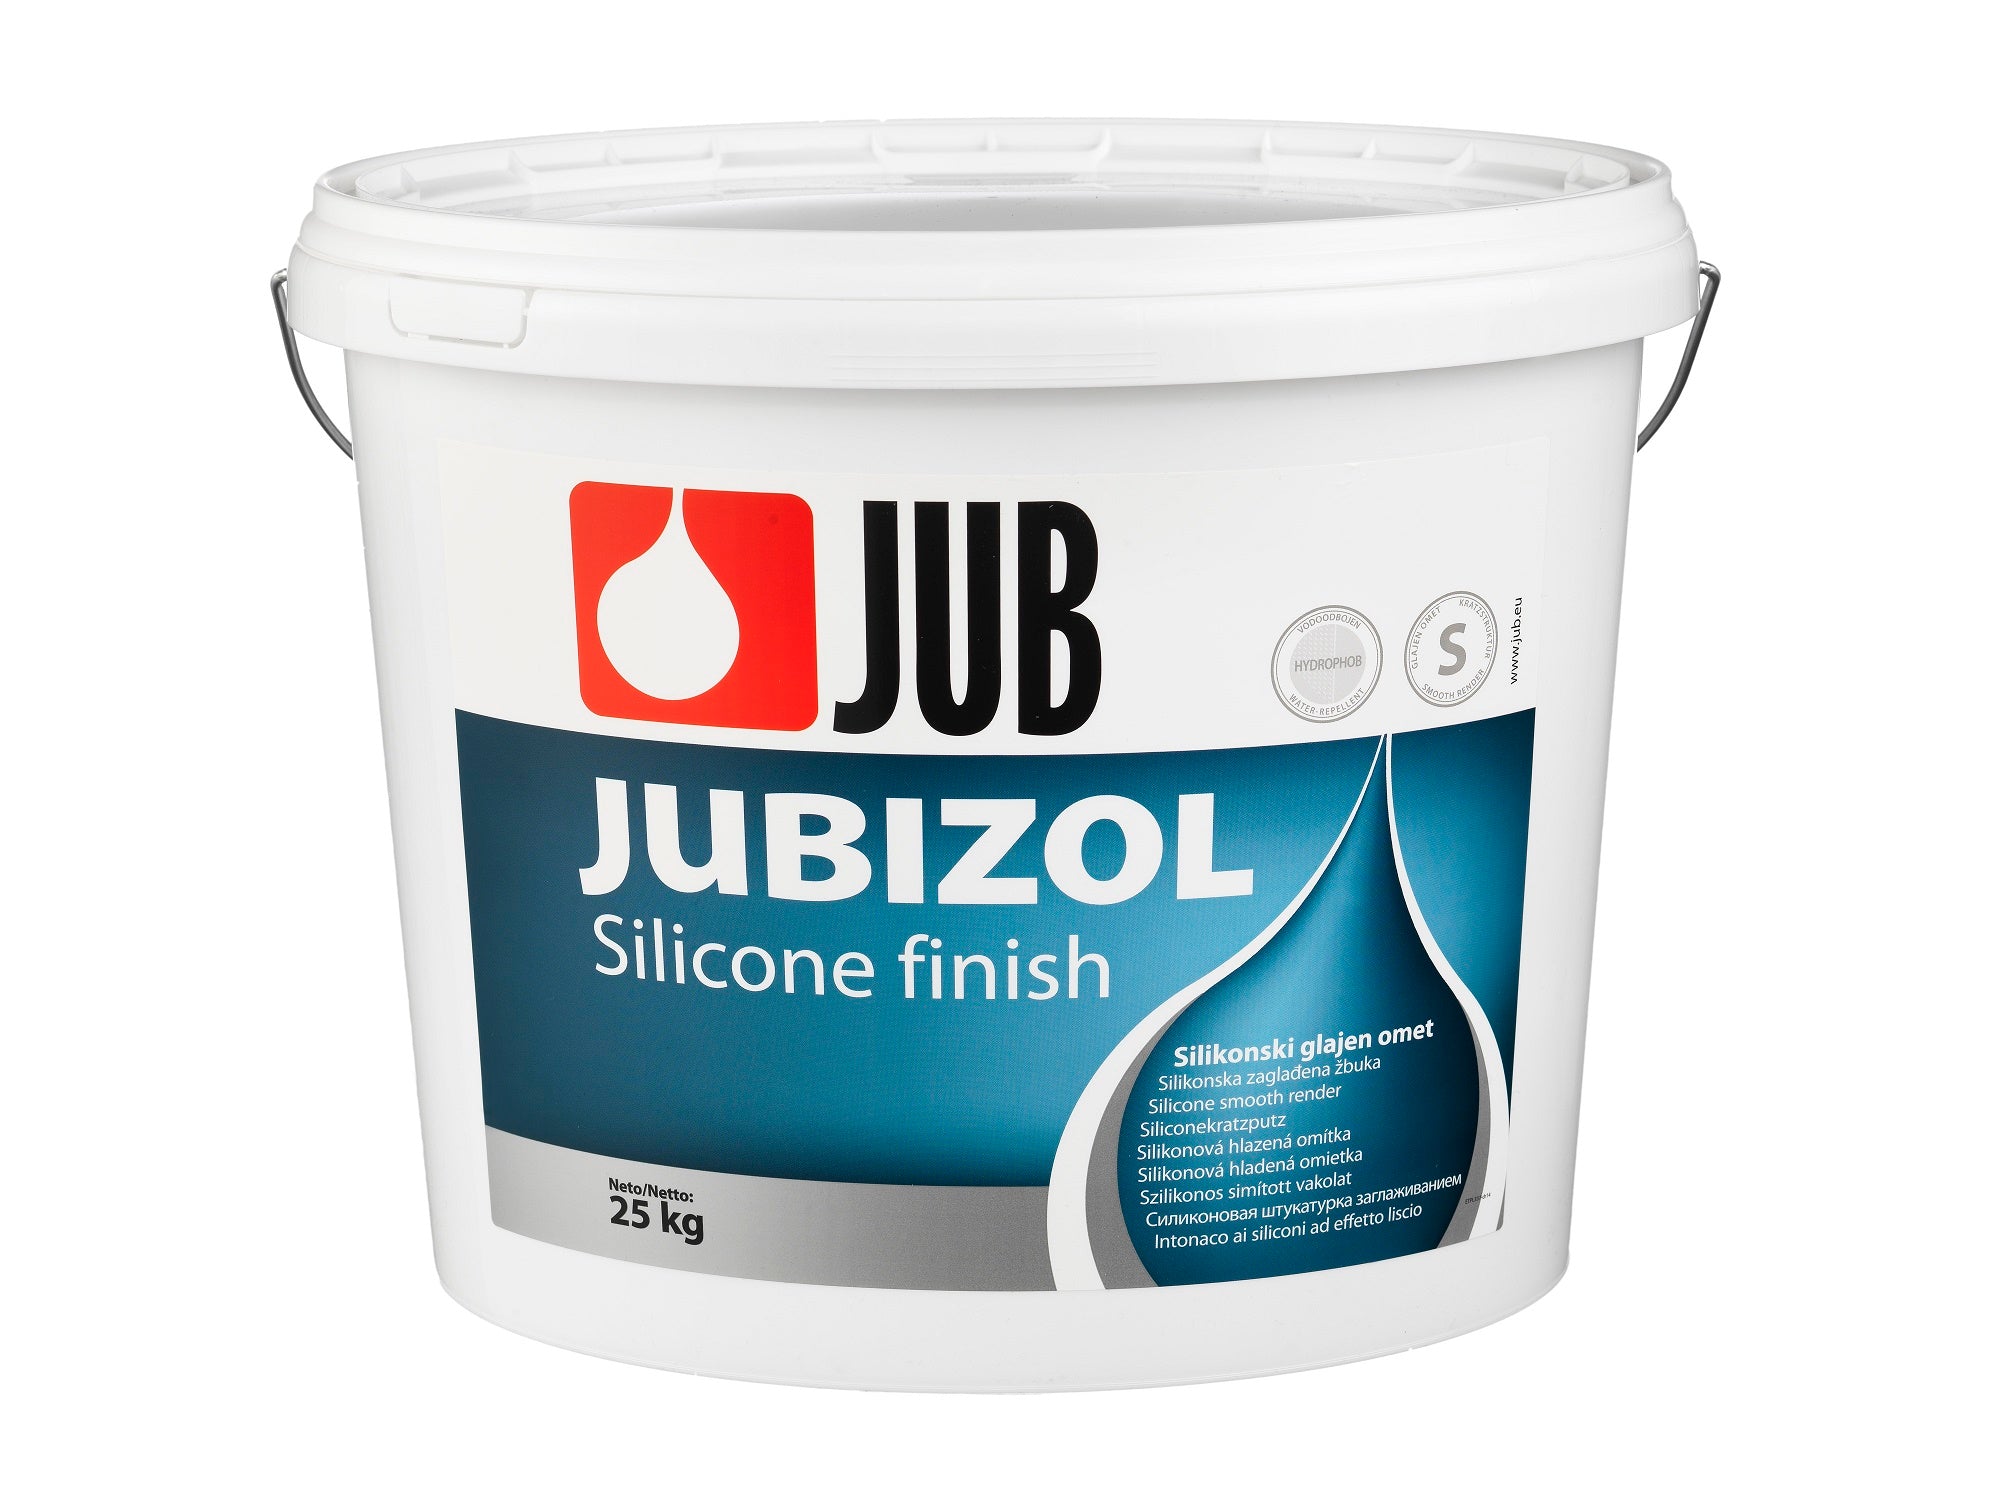 JUB JUBIZOL Silicone finish S silikonová hlazená omítka 25 kg